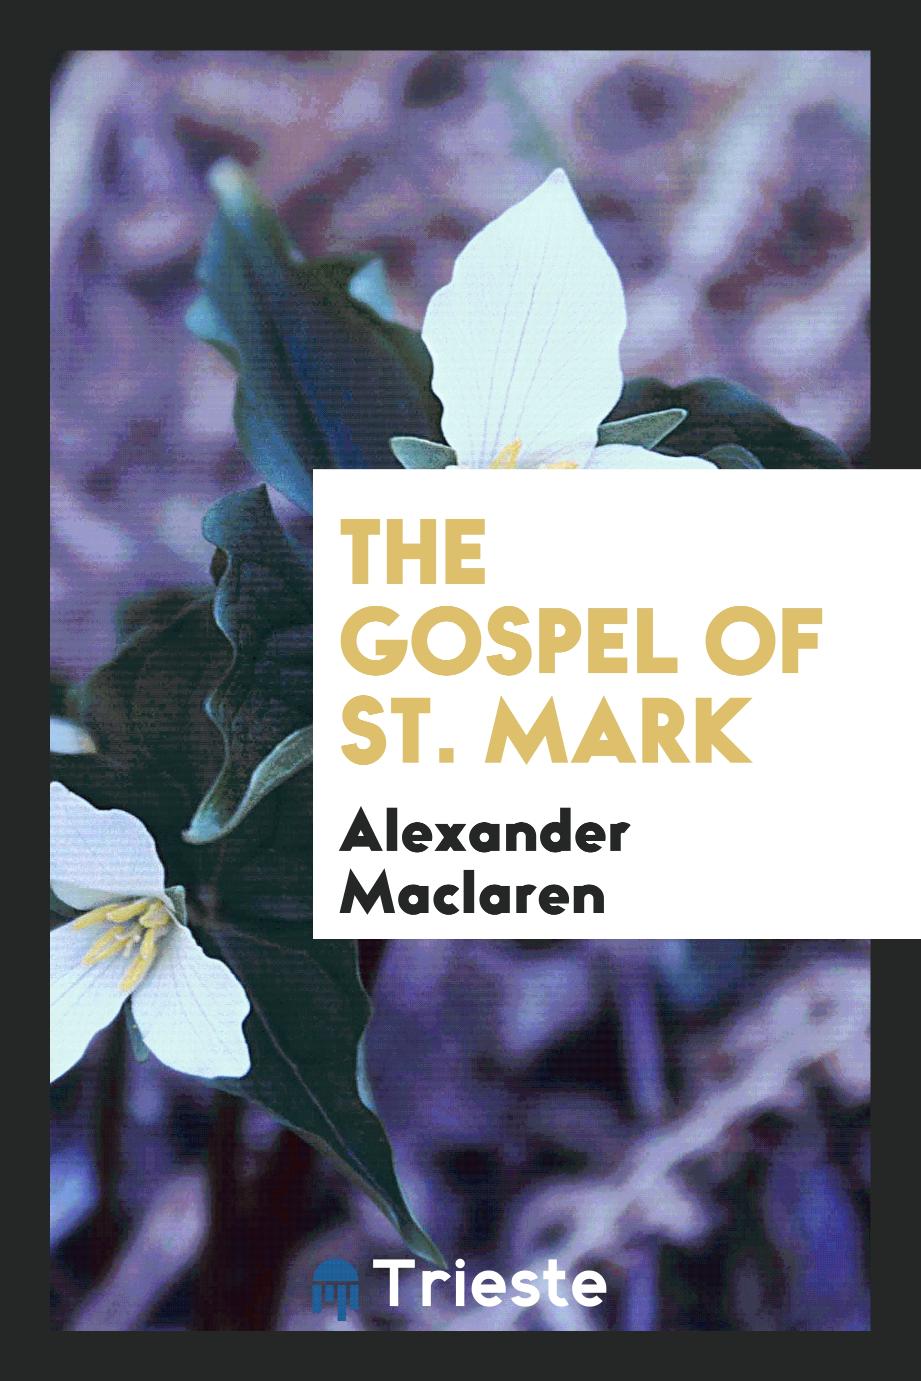 The gospel of St. Mark